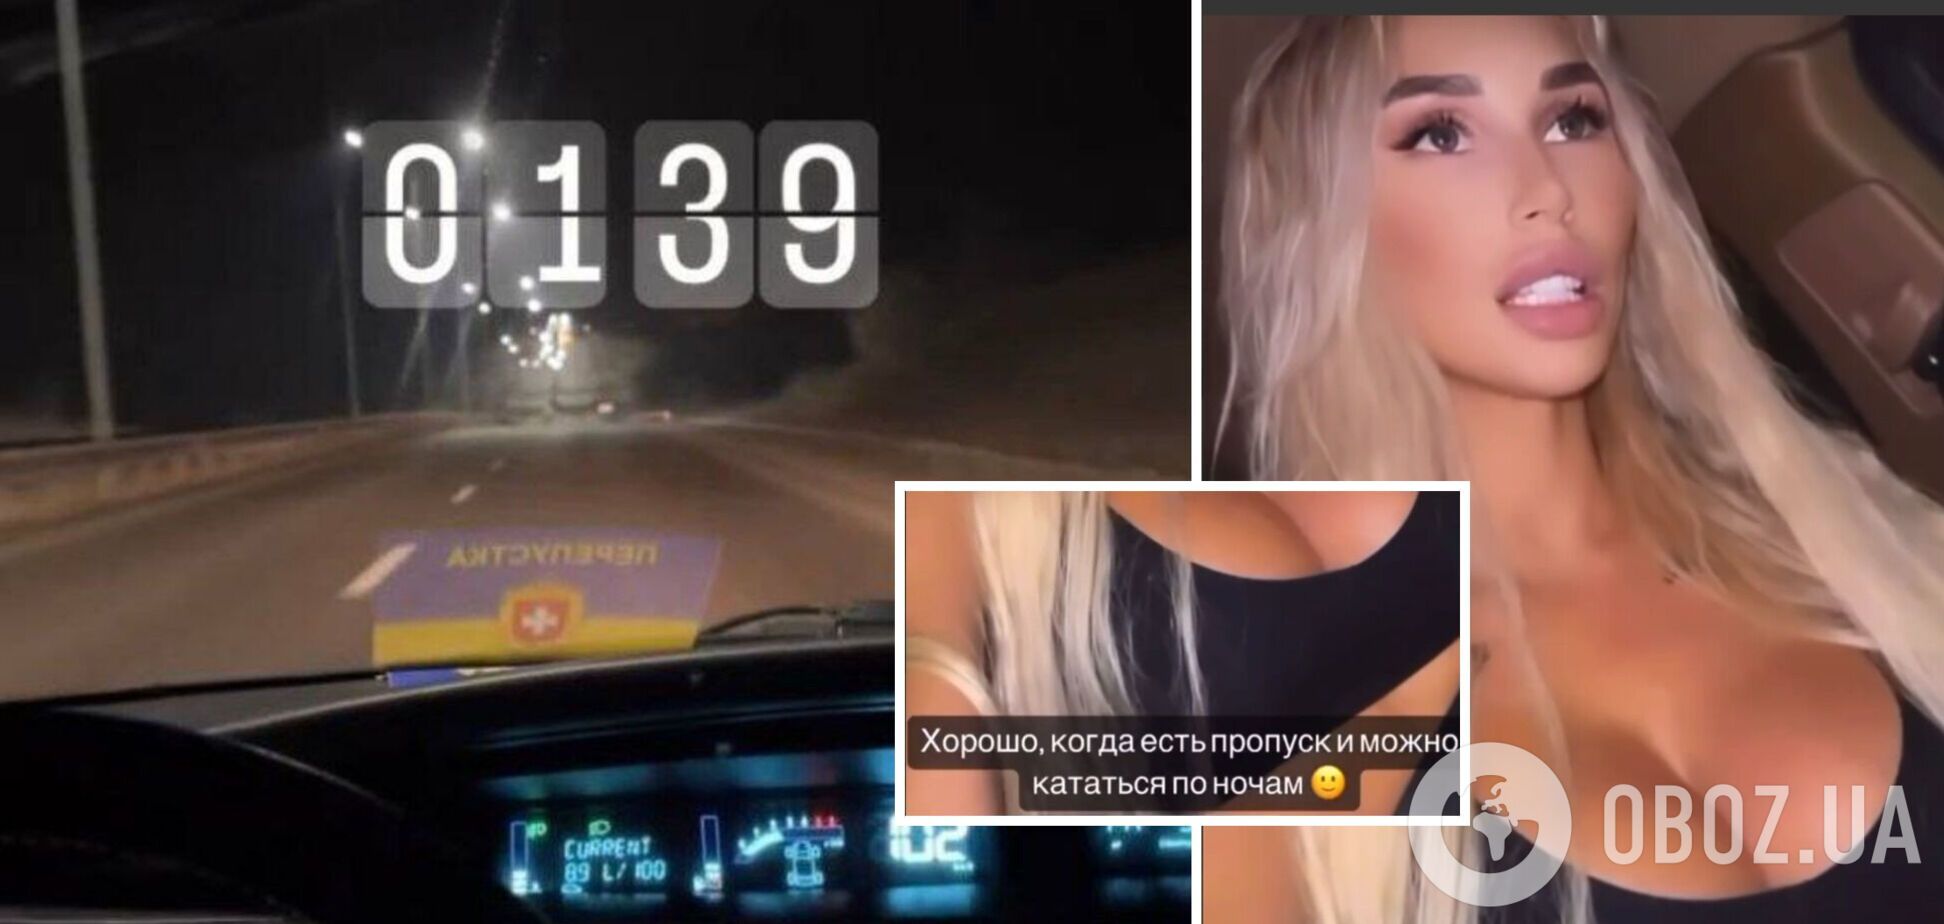 Дівчина опублікувала відео де нібито їздить вночі вулицями із спецперепусткою